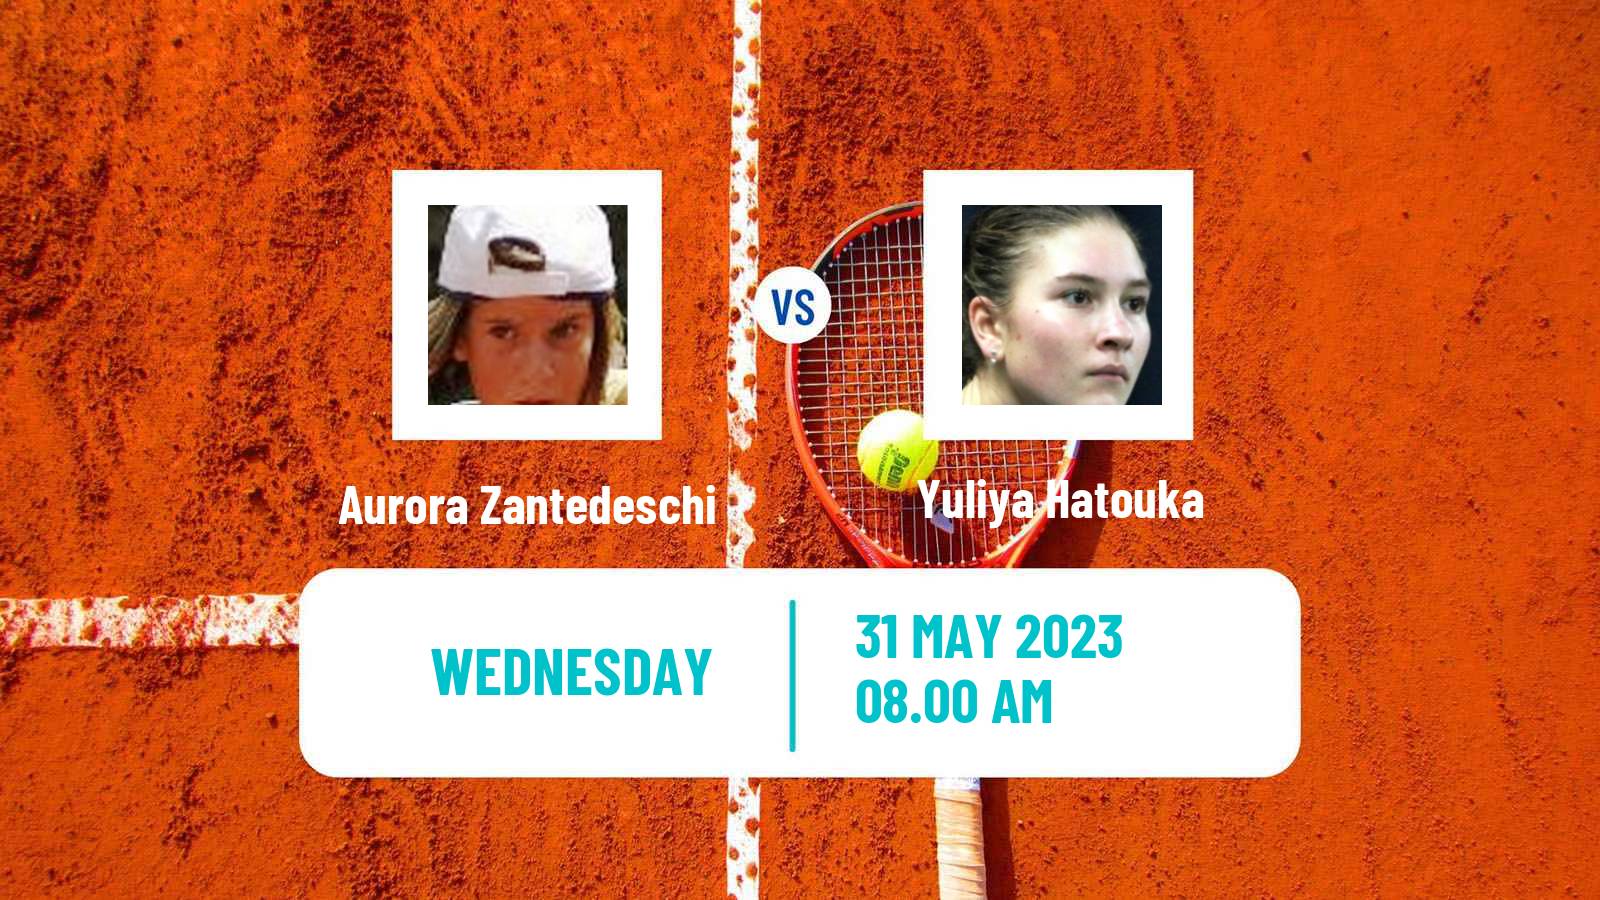 Tennis ITF W60 Brescia Women Aurora Zantedeschi - Yuliya Hatouka